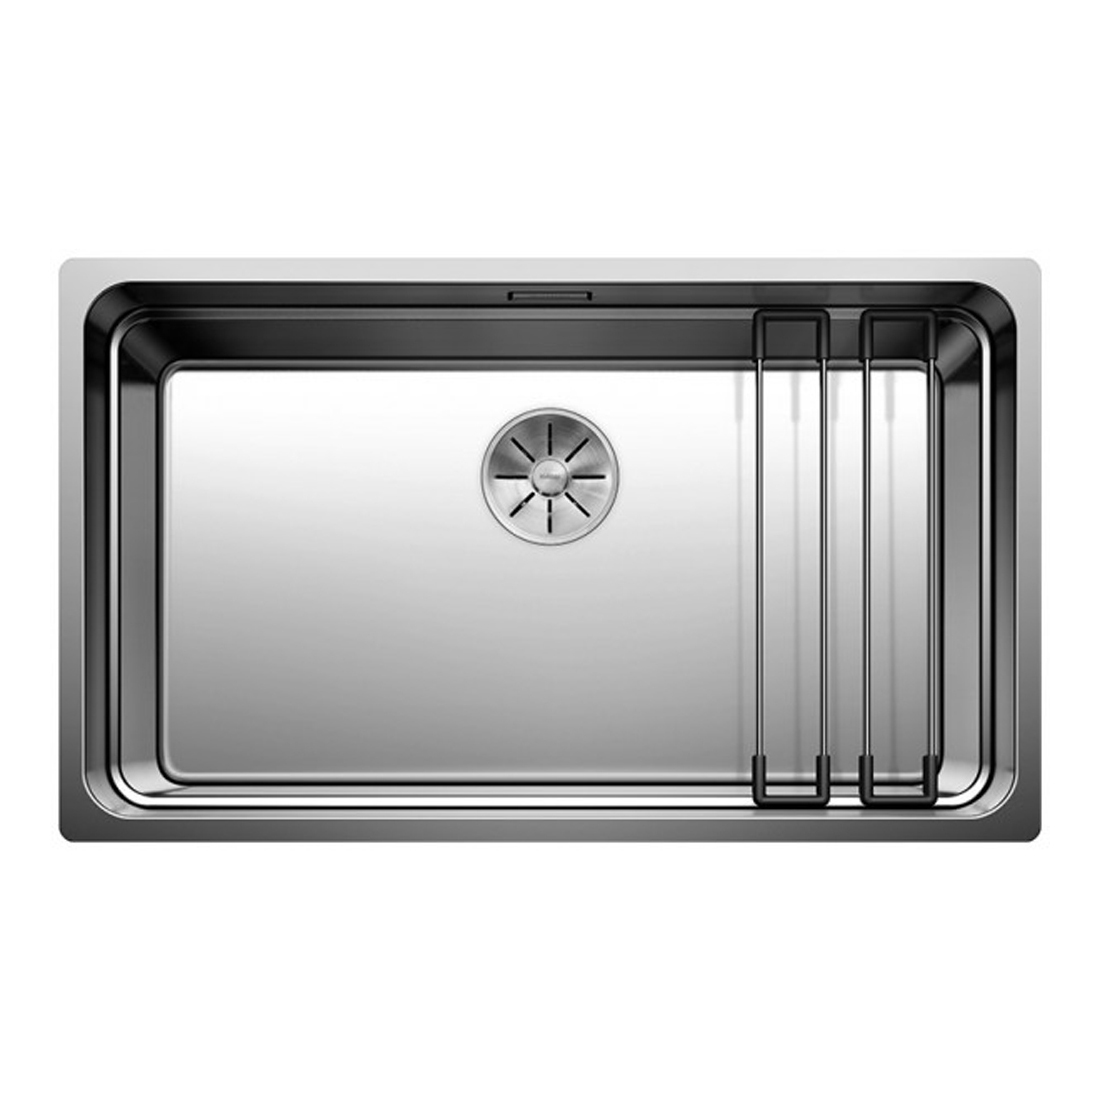 Кухонная мойка Blanco Etagon 700-U зеркальная полировка кухонная мойка blanco etagon 700 u белая